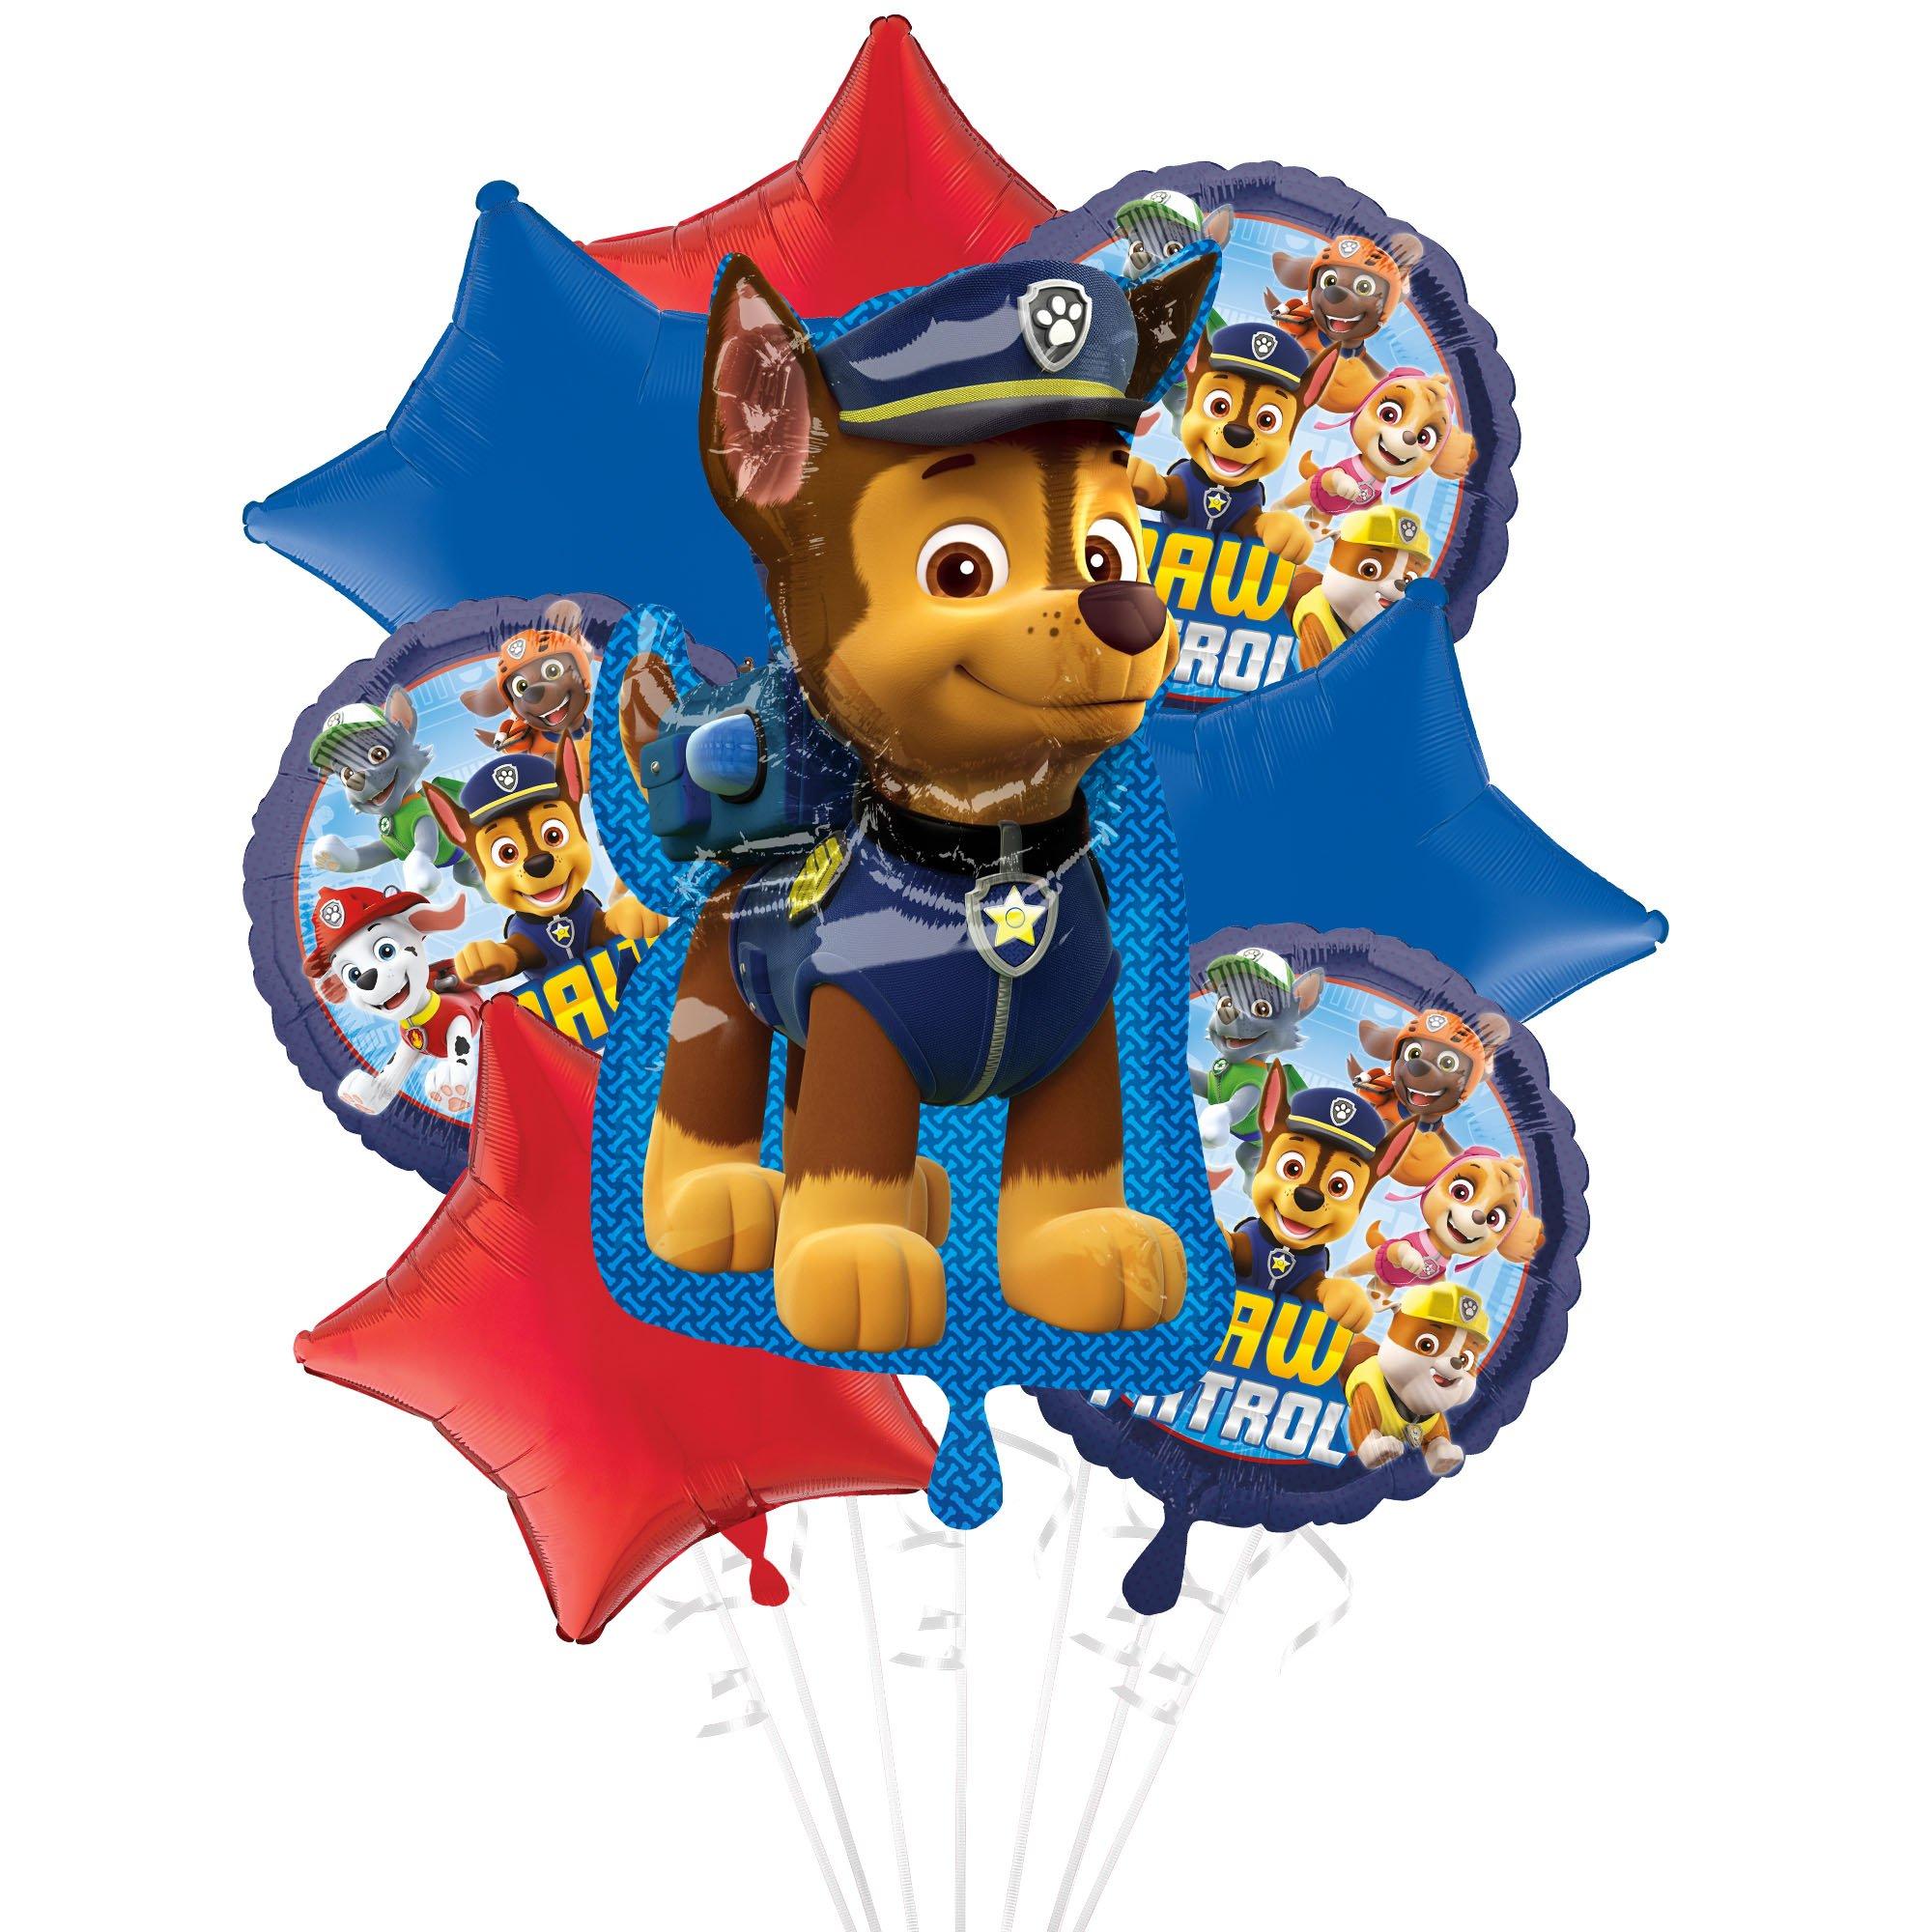 Happy Box - INICIANDO LA SEMANA CON LA PATRULLA CANINA 🐶 #globo #globos  #balloon #balloons #bouquetdeglobos #balloonbouquet #globospawpatrol  #pawpatrolparty #pawpatrol #chase #globodenumero #numberballoons  #happyboxqro